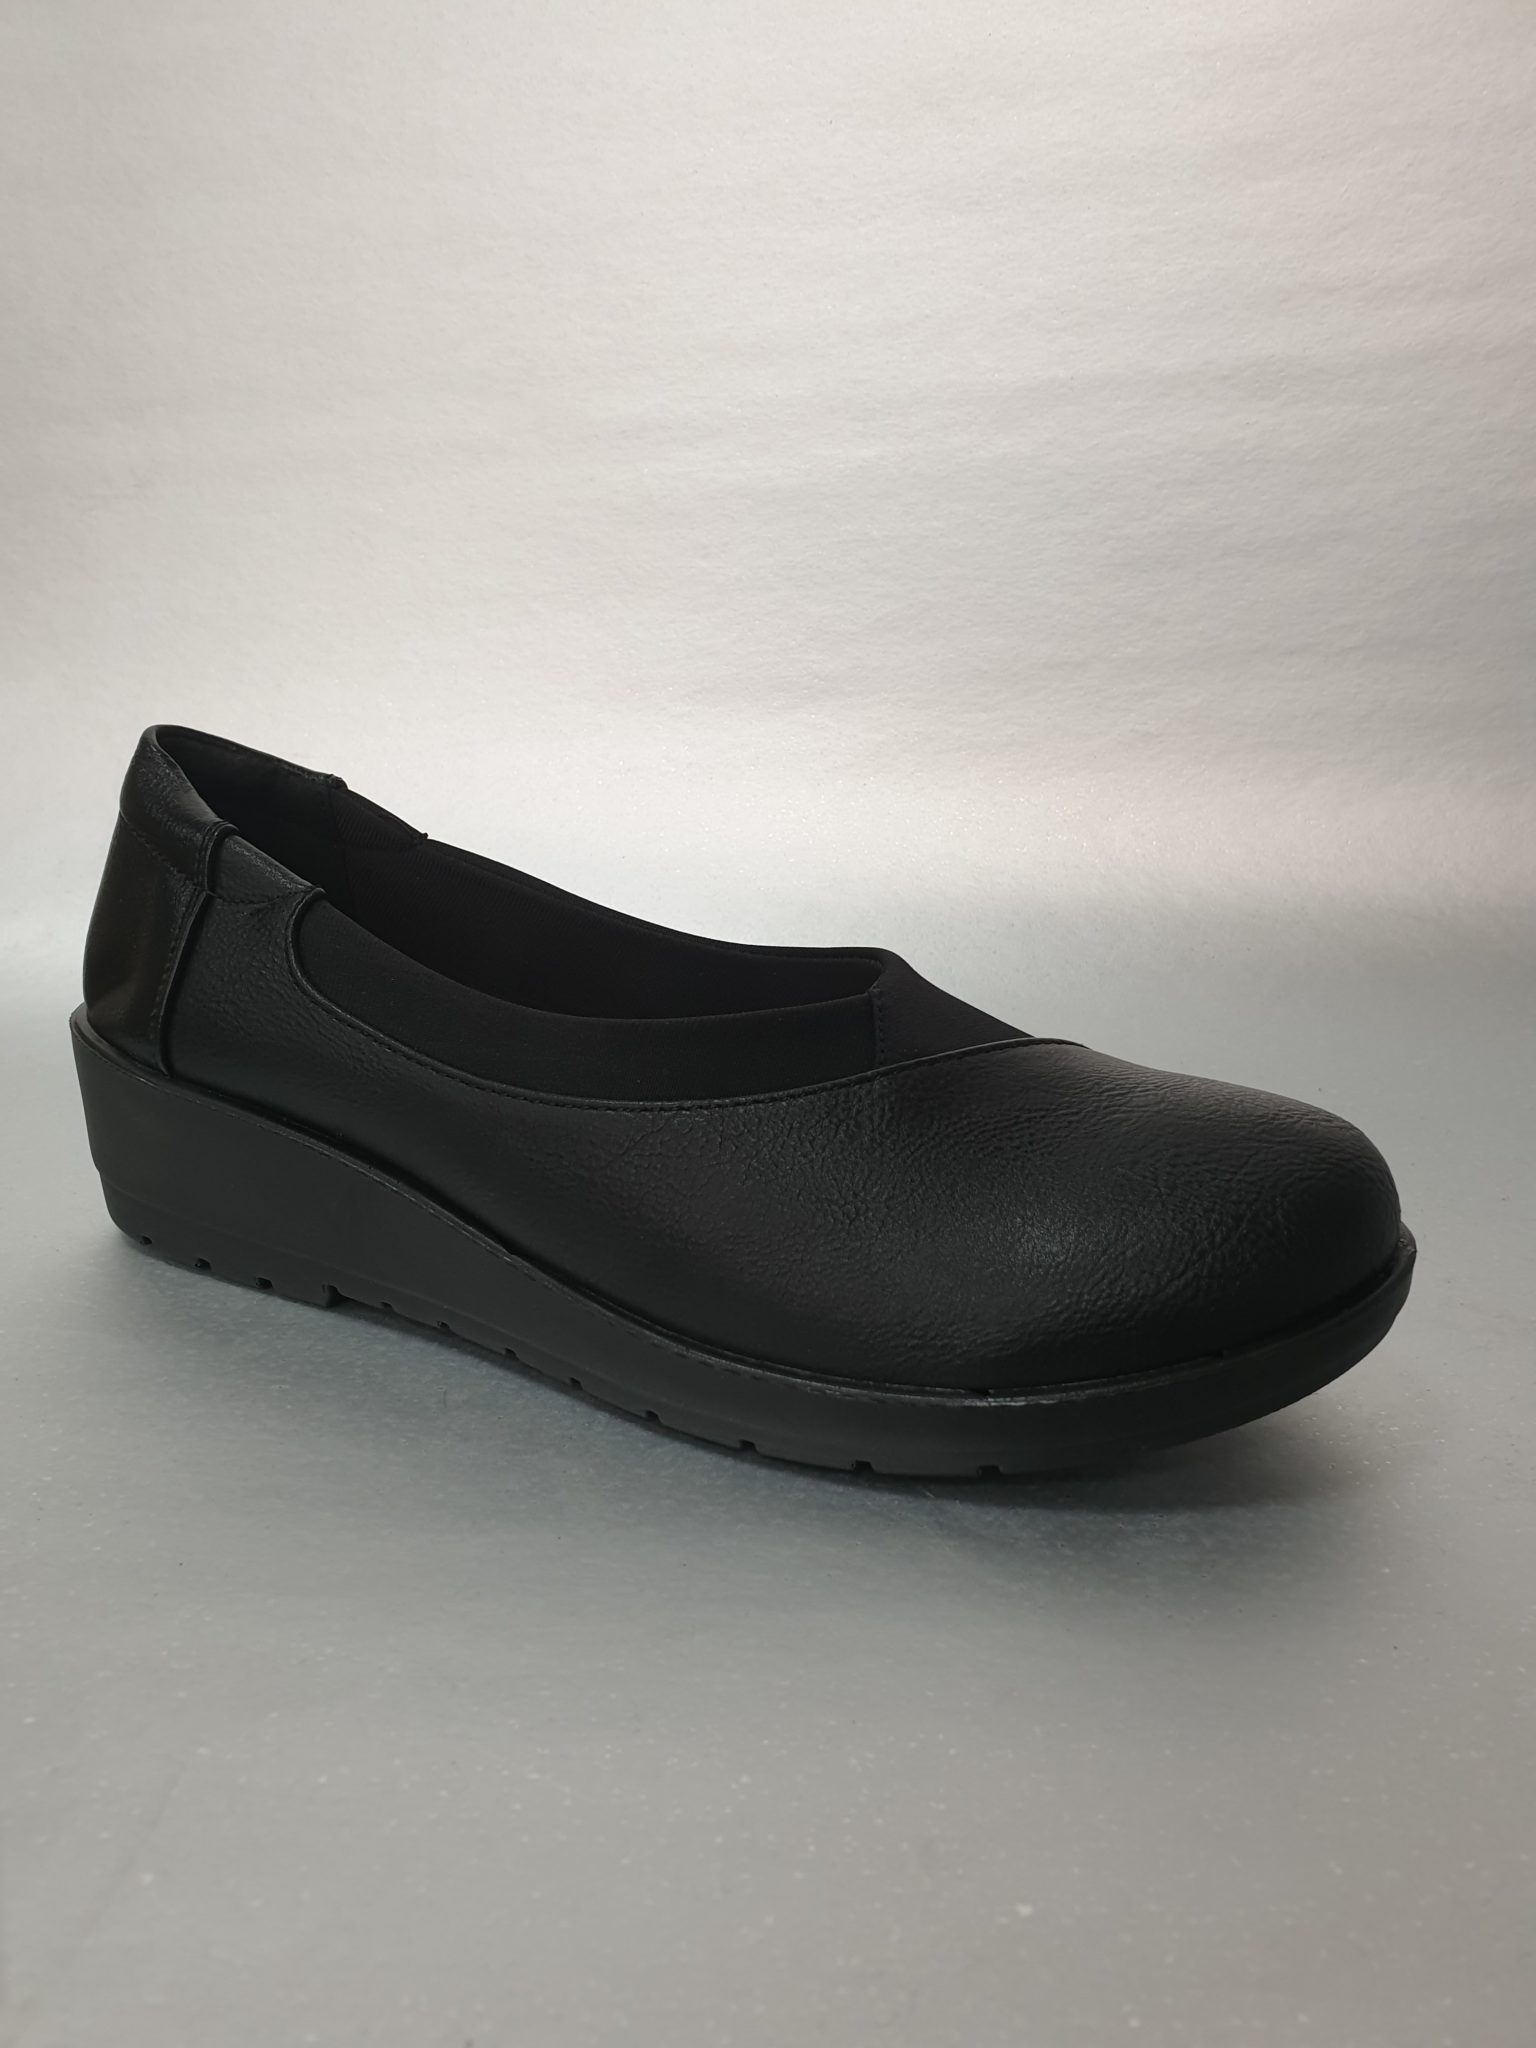 Shoes black casual work – Bella Shoes – Unique Women Shoes collection